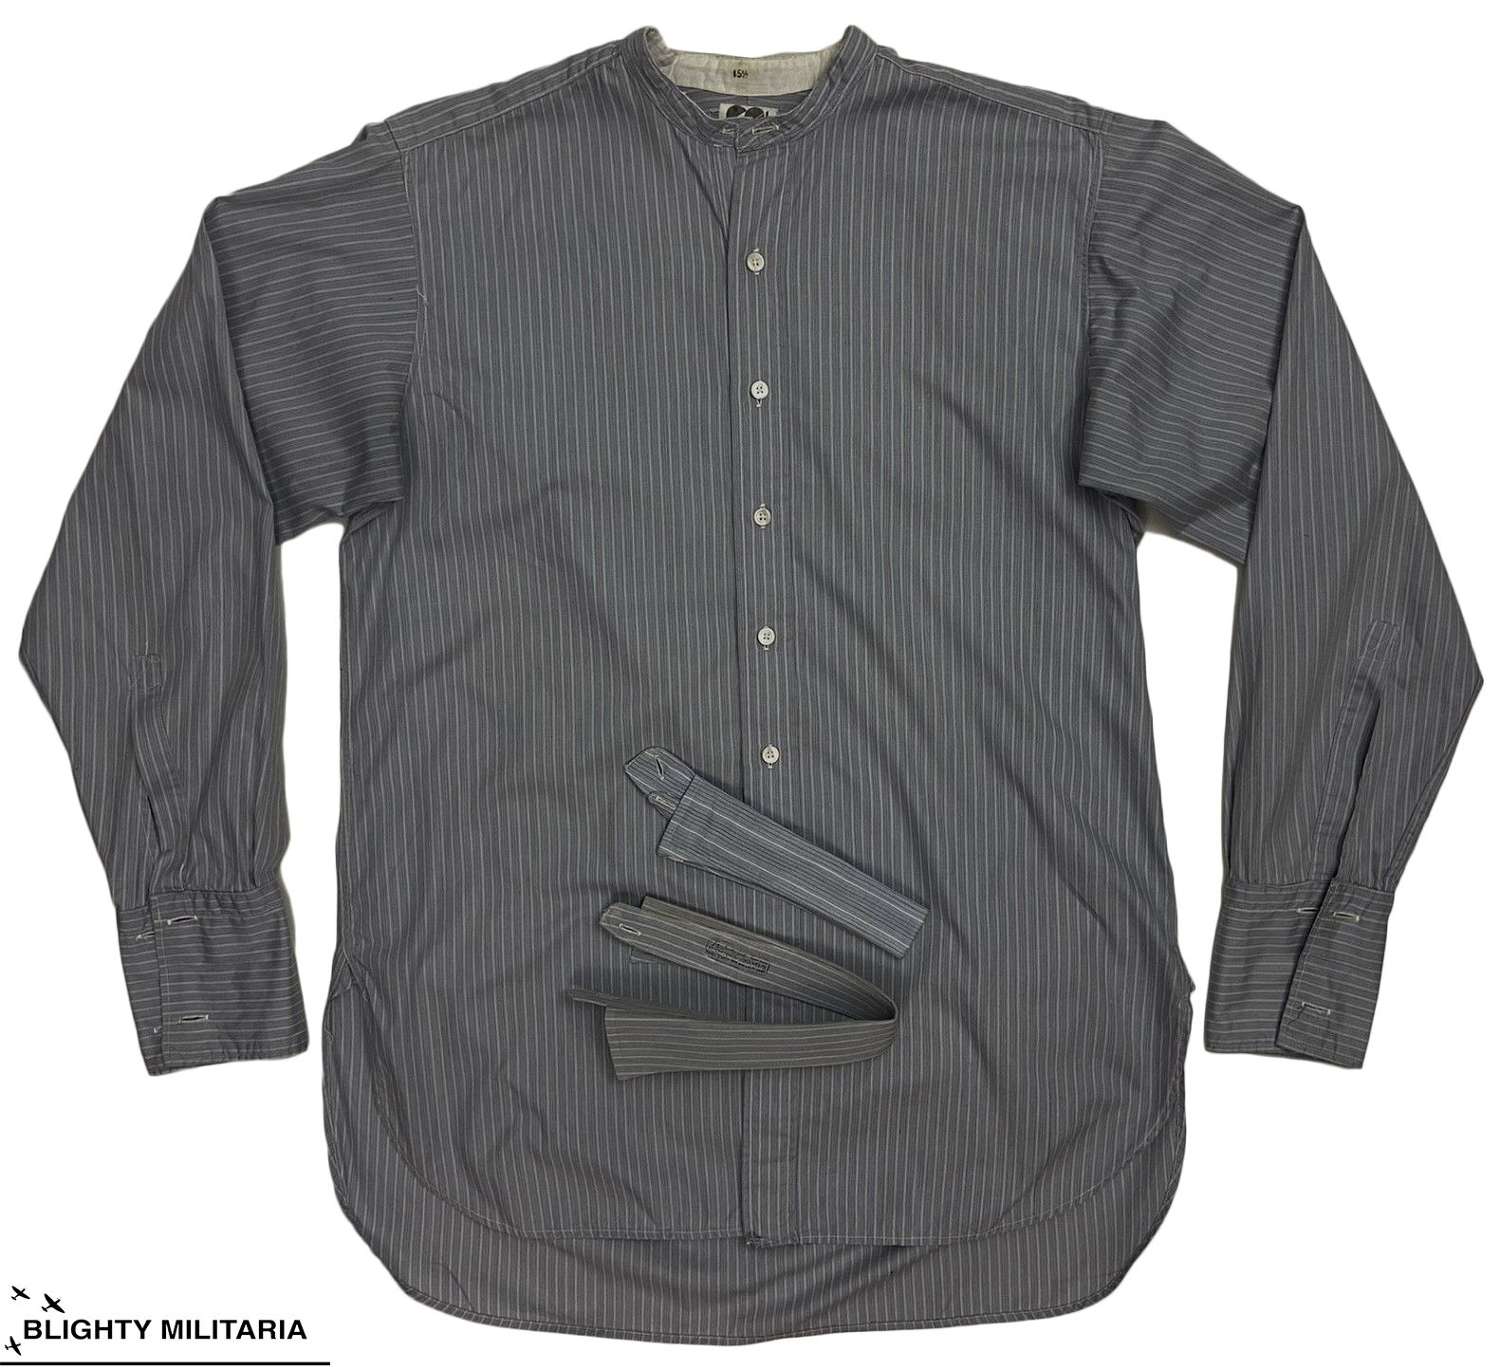 Orginal 1940s CC41 Collarless Shirt + Collars - Size 15 1/2